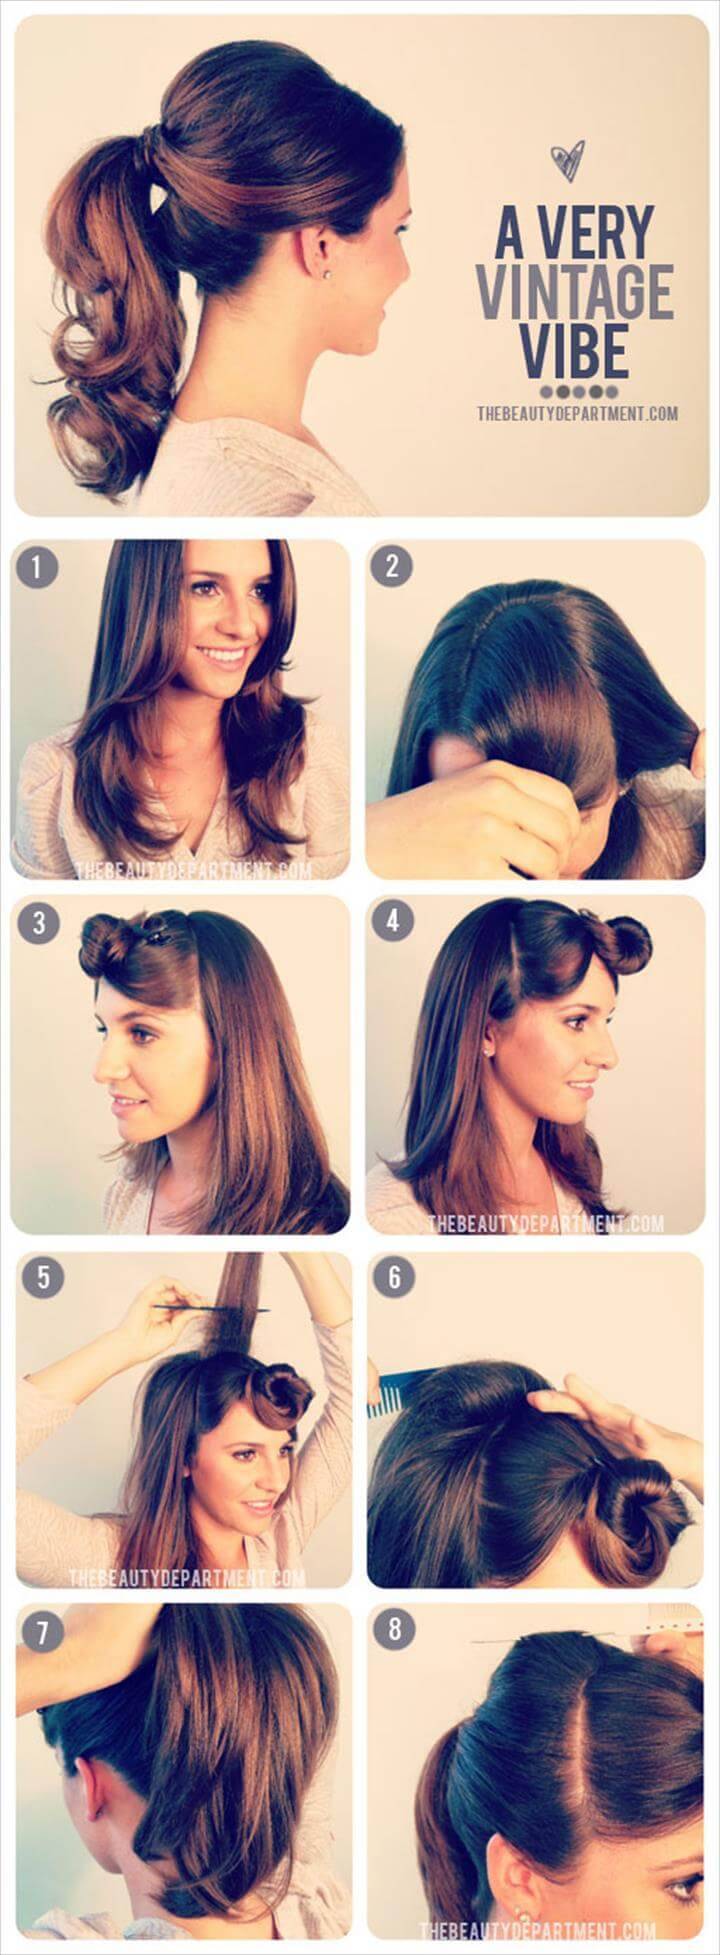 vintage ponytail hairstyle